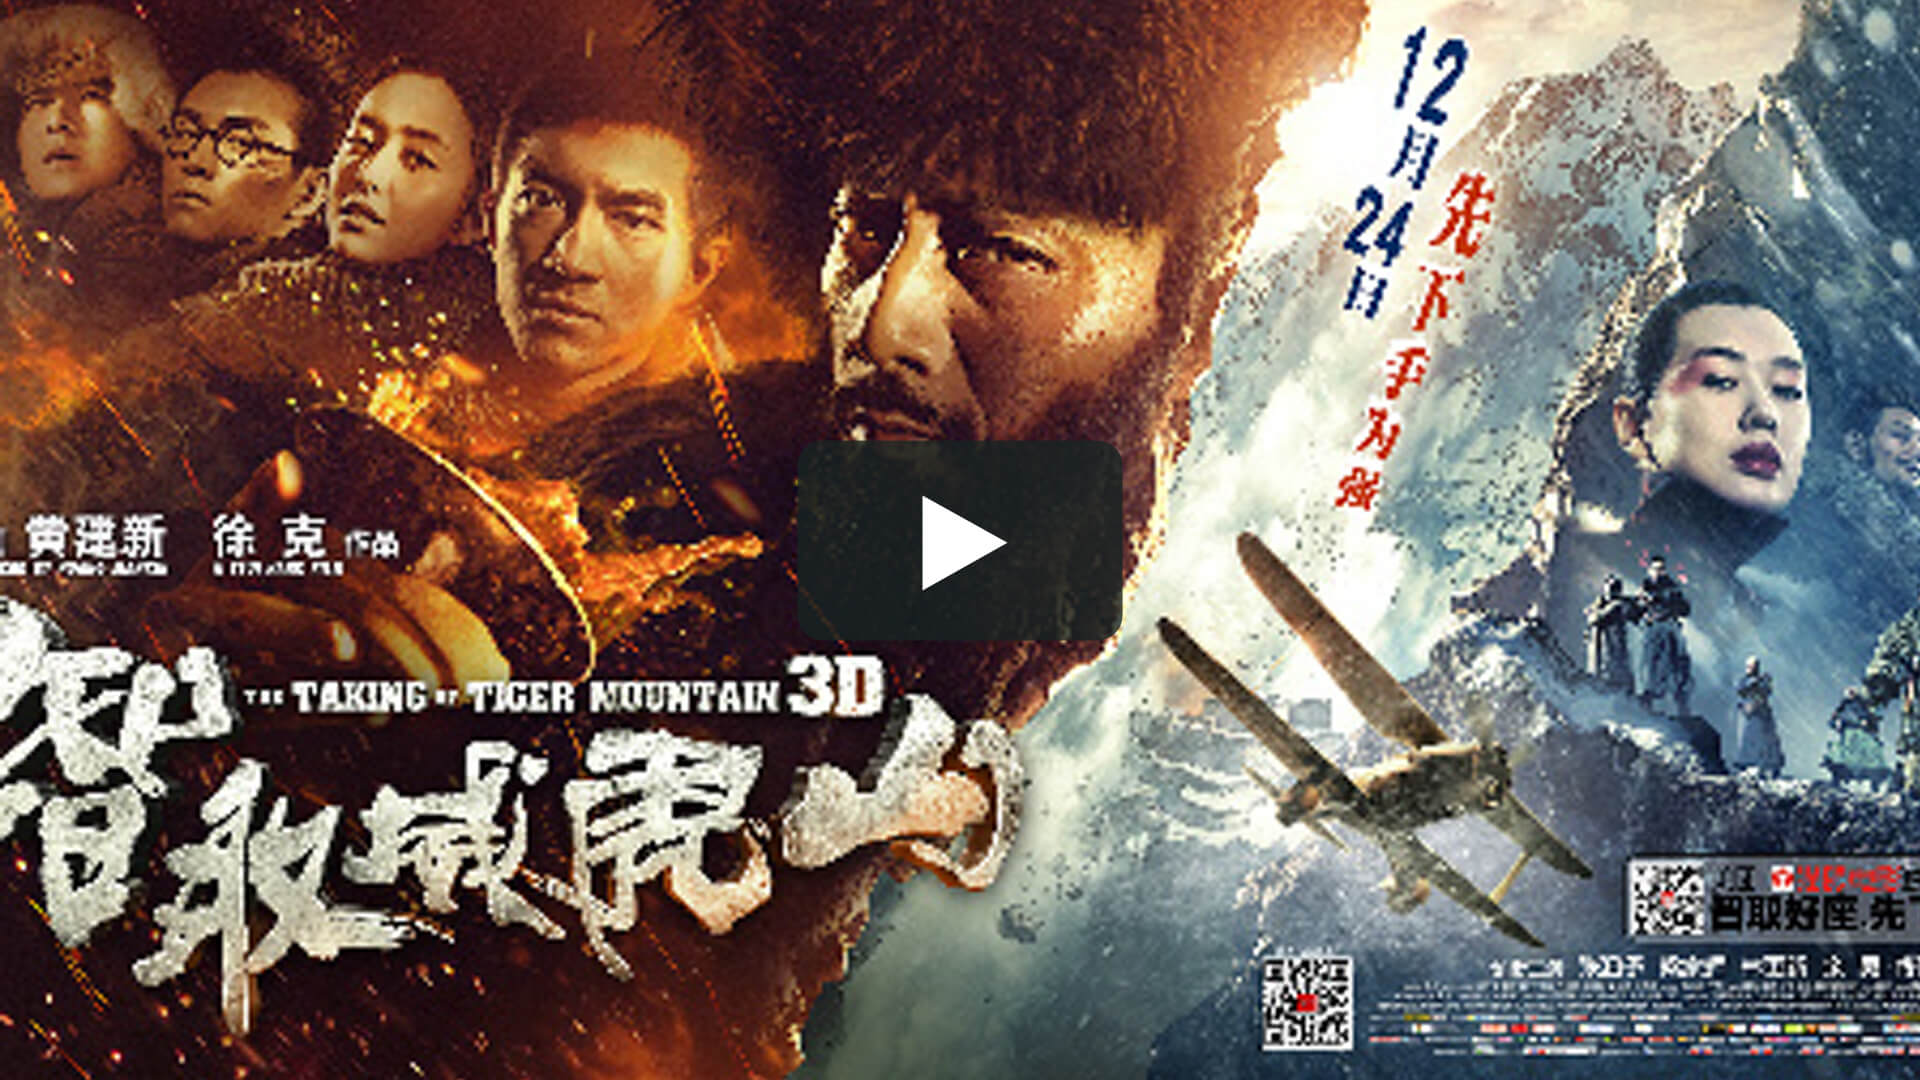 智取威虎山 - The Taking of Tiger Mountain